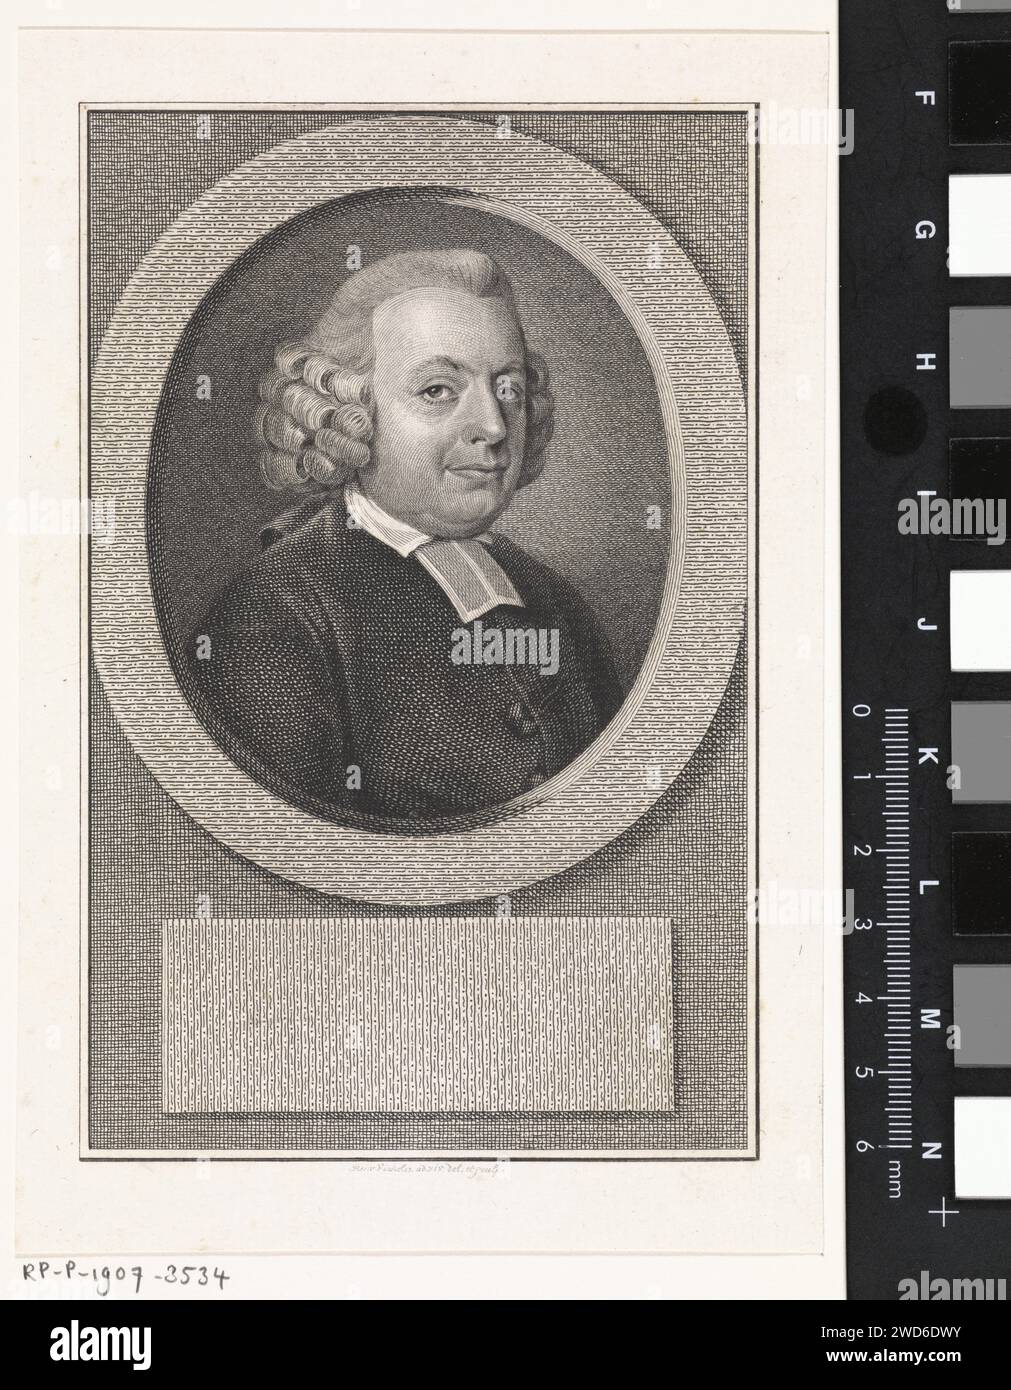 Porträt von August Strong, reinier Angles (i), 1794 gedrucktes Porträt von August Sterk, Luthers Pastor in Amsterdam. Amsterdamer Papierätzung/Gravur Stockfoto